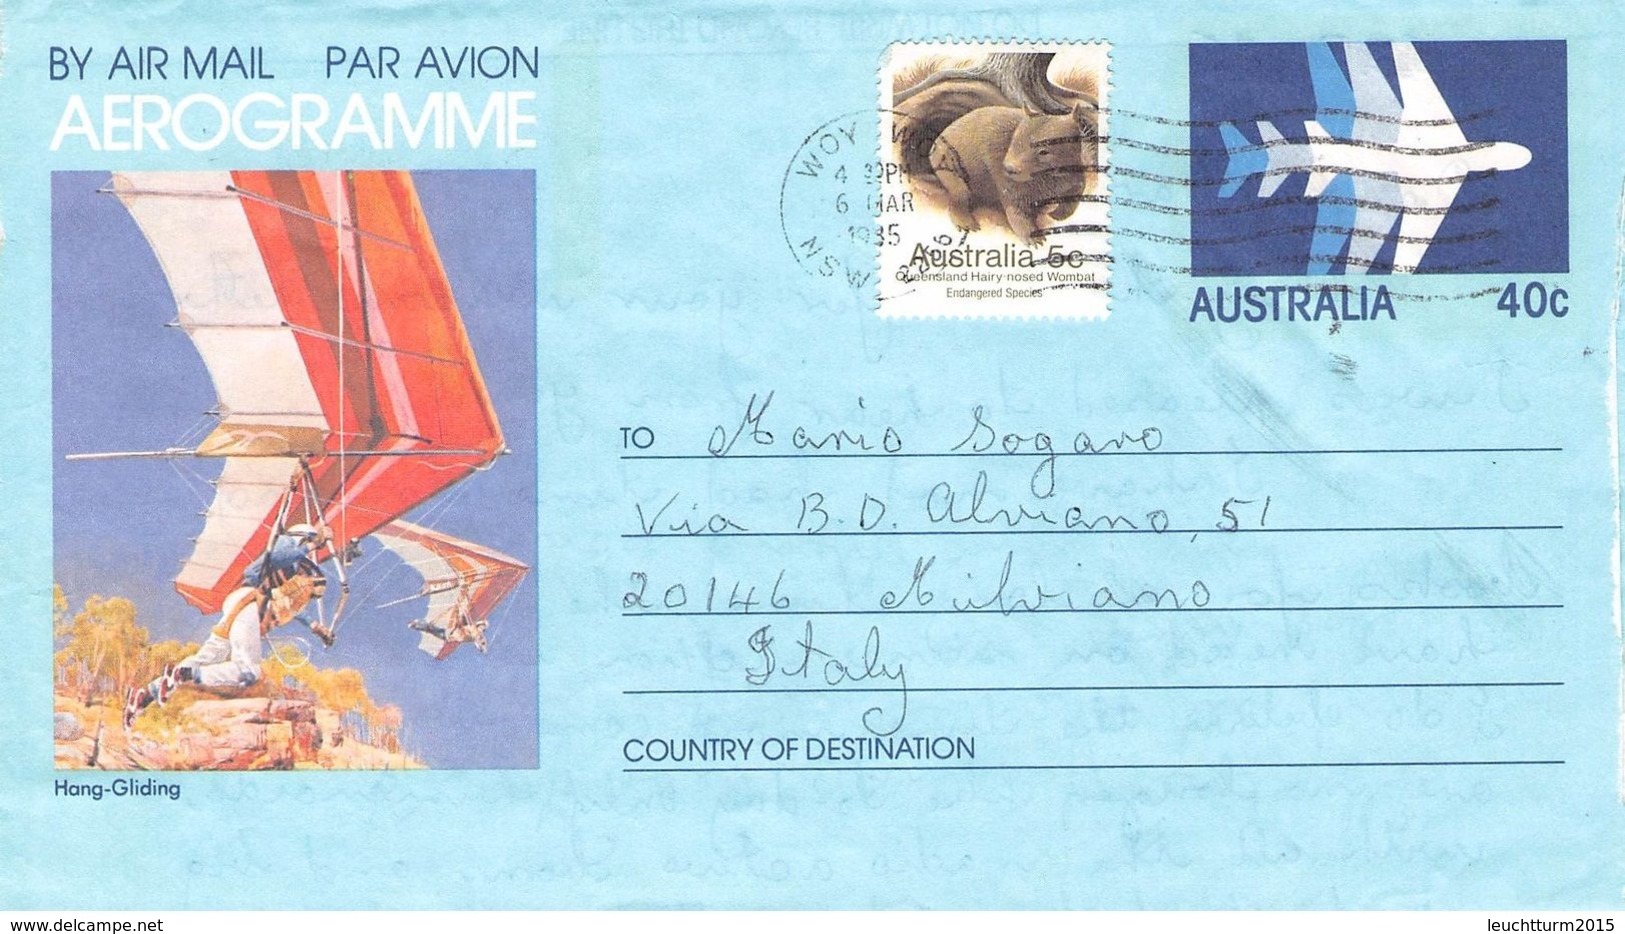 AUSTRALIA - AEROGRAMME 1985 - ITALY /ak996 - Aerogrammi